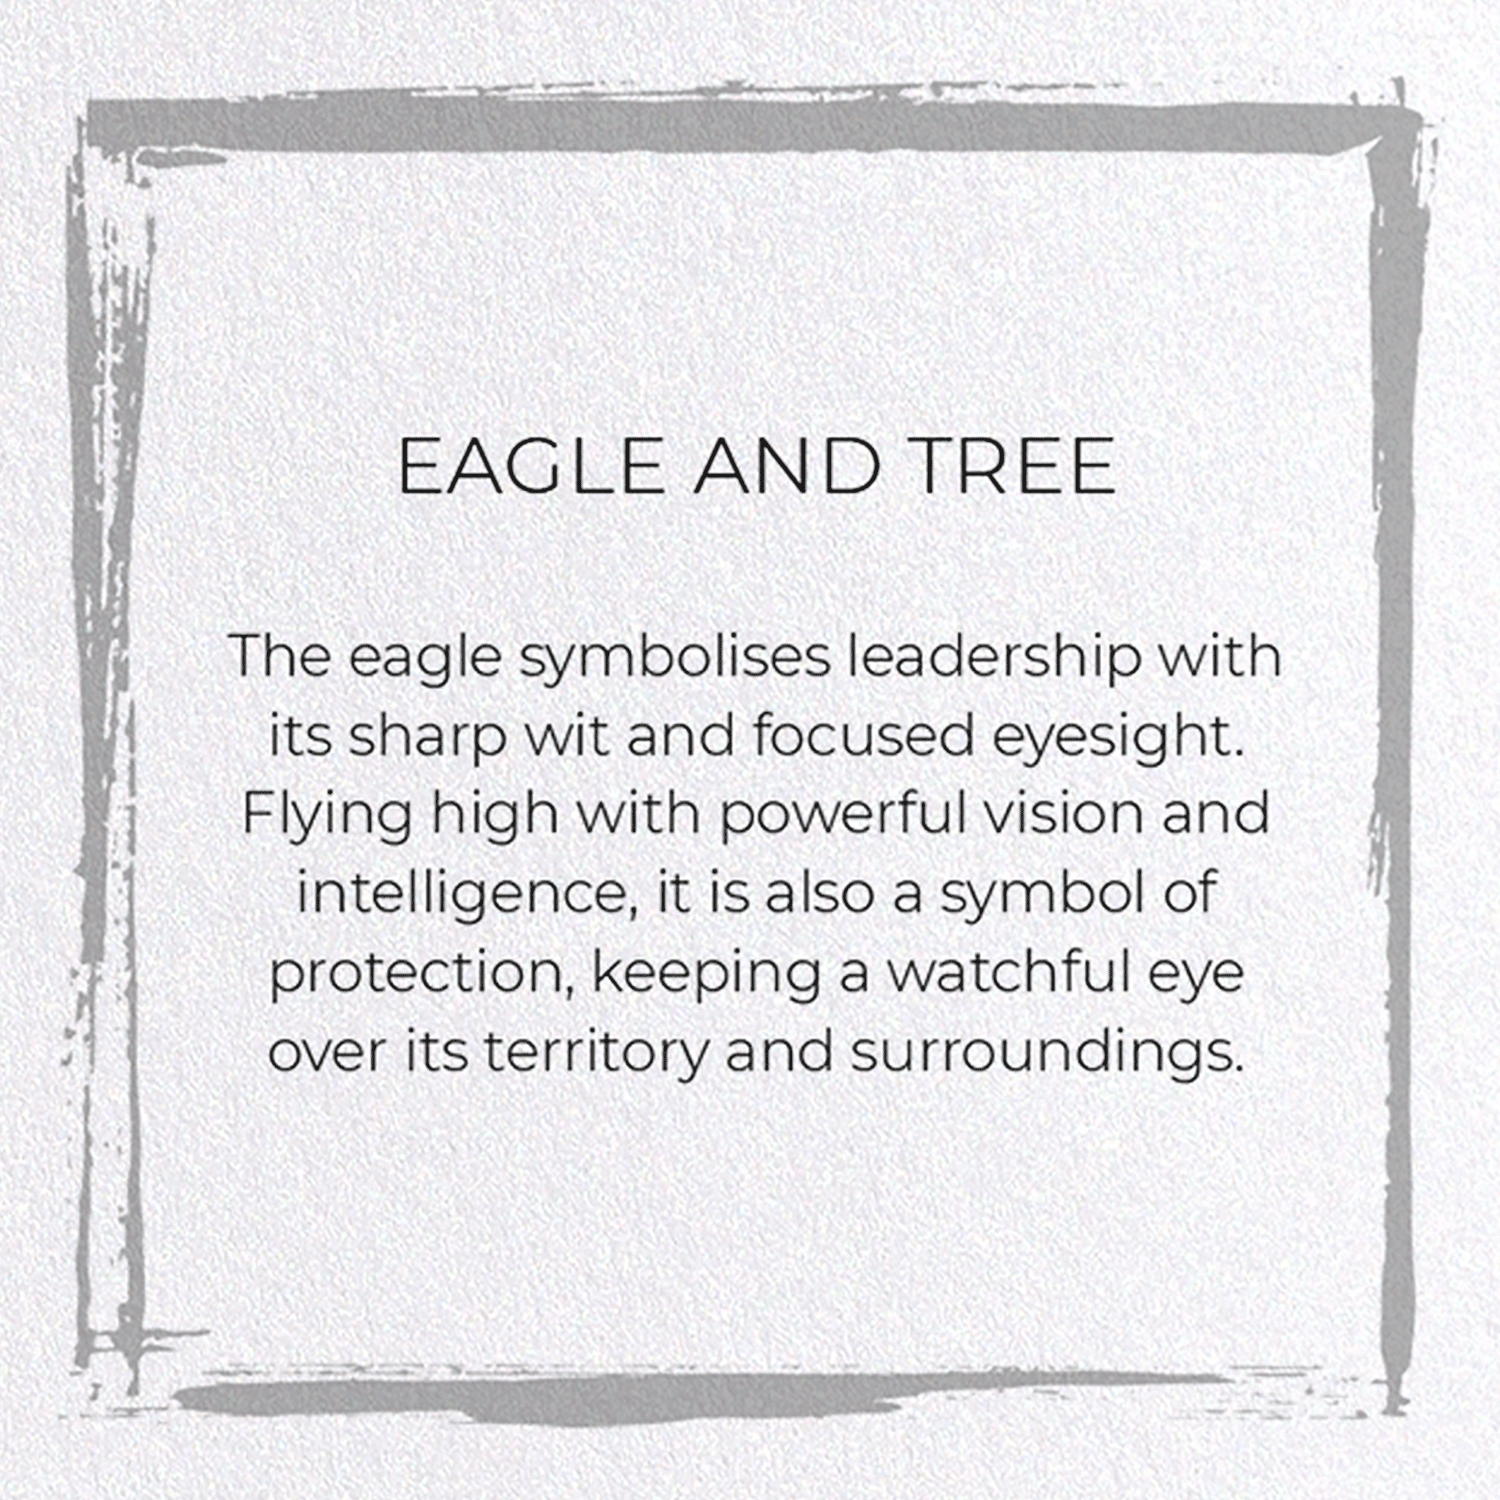 EAGLE AND TREE